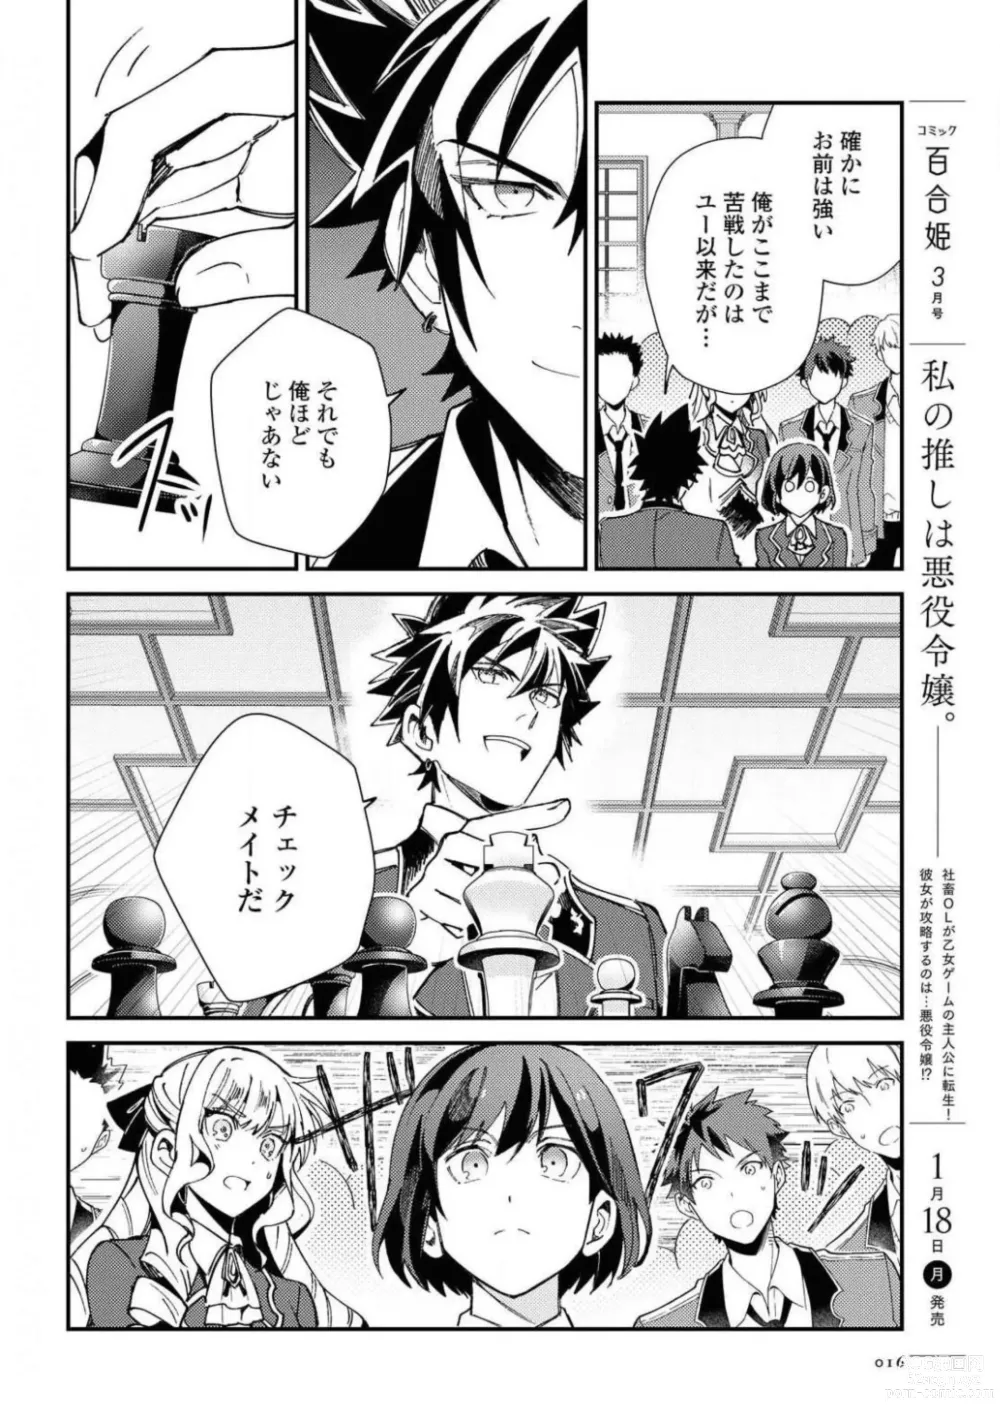 Page 16 of manga Comic Yuri Hime 2021-02